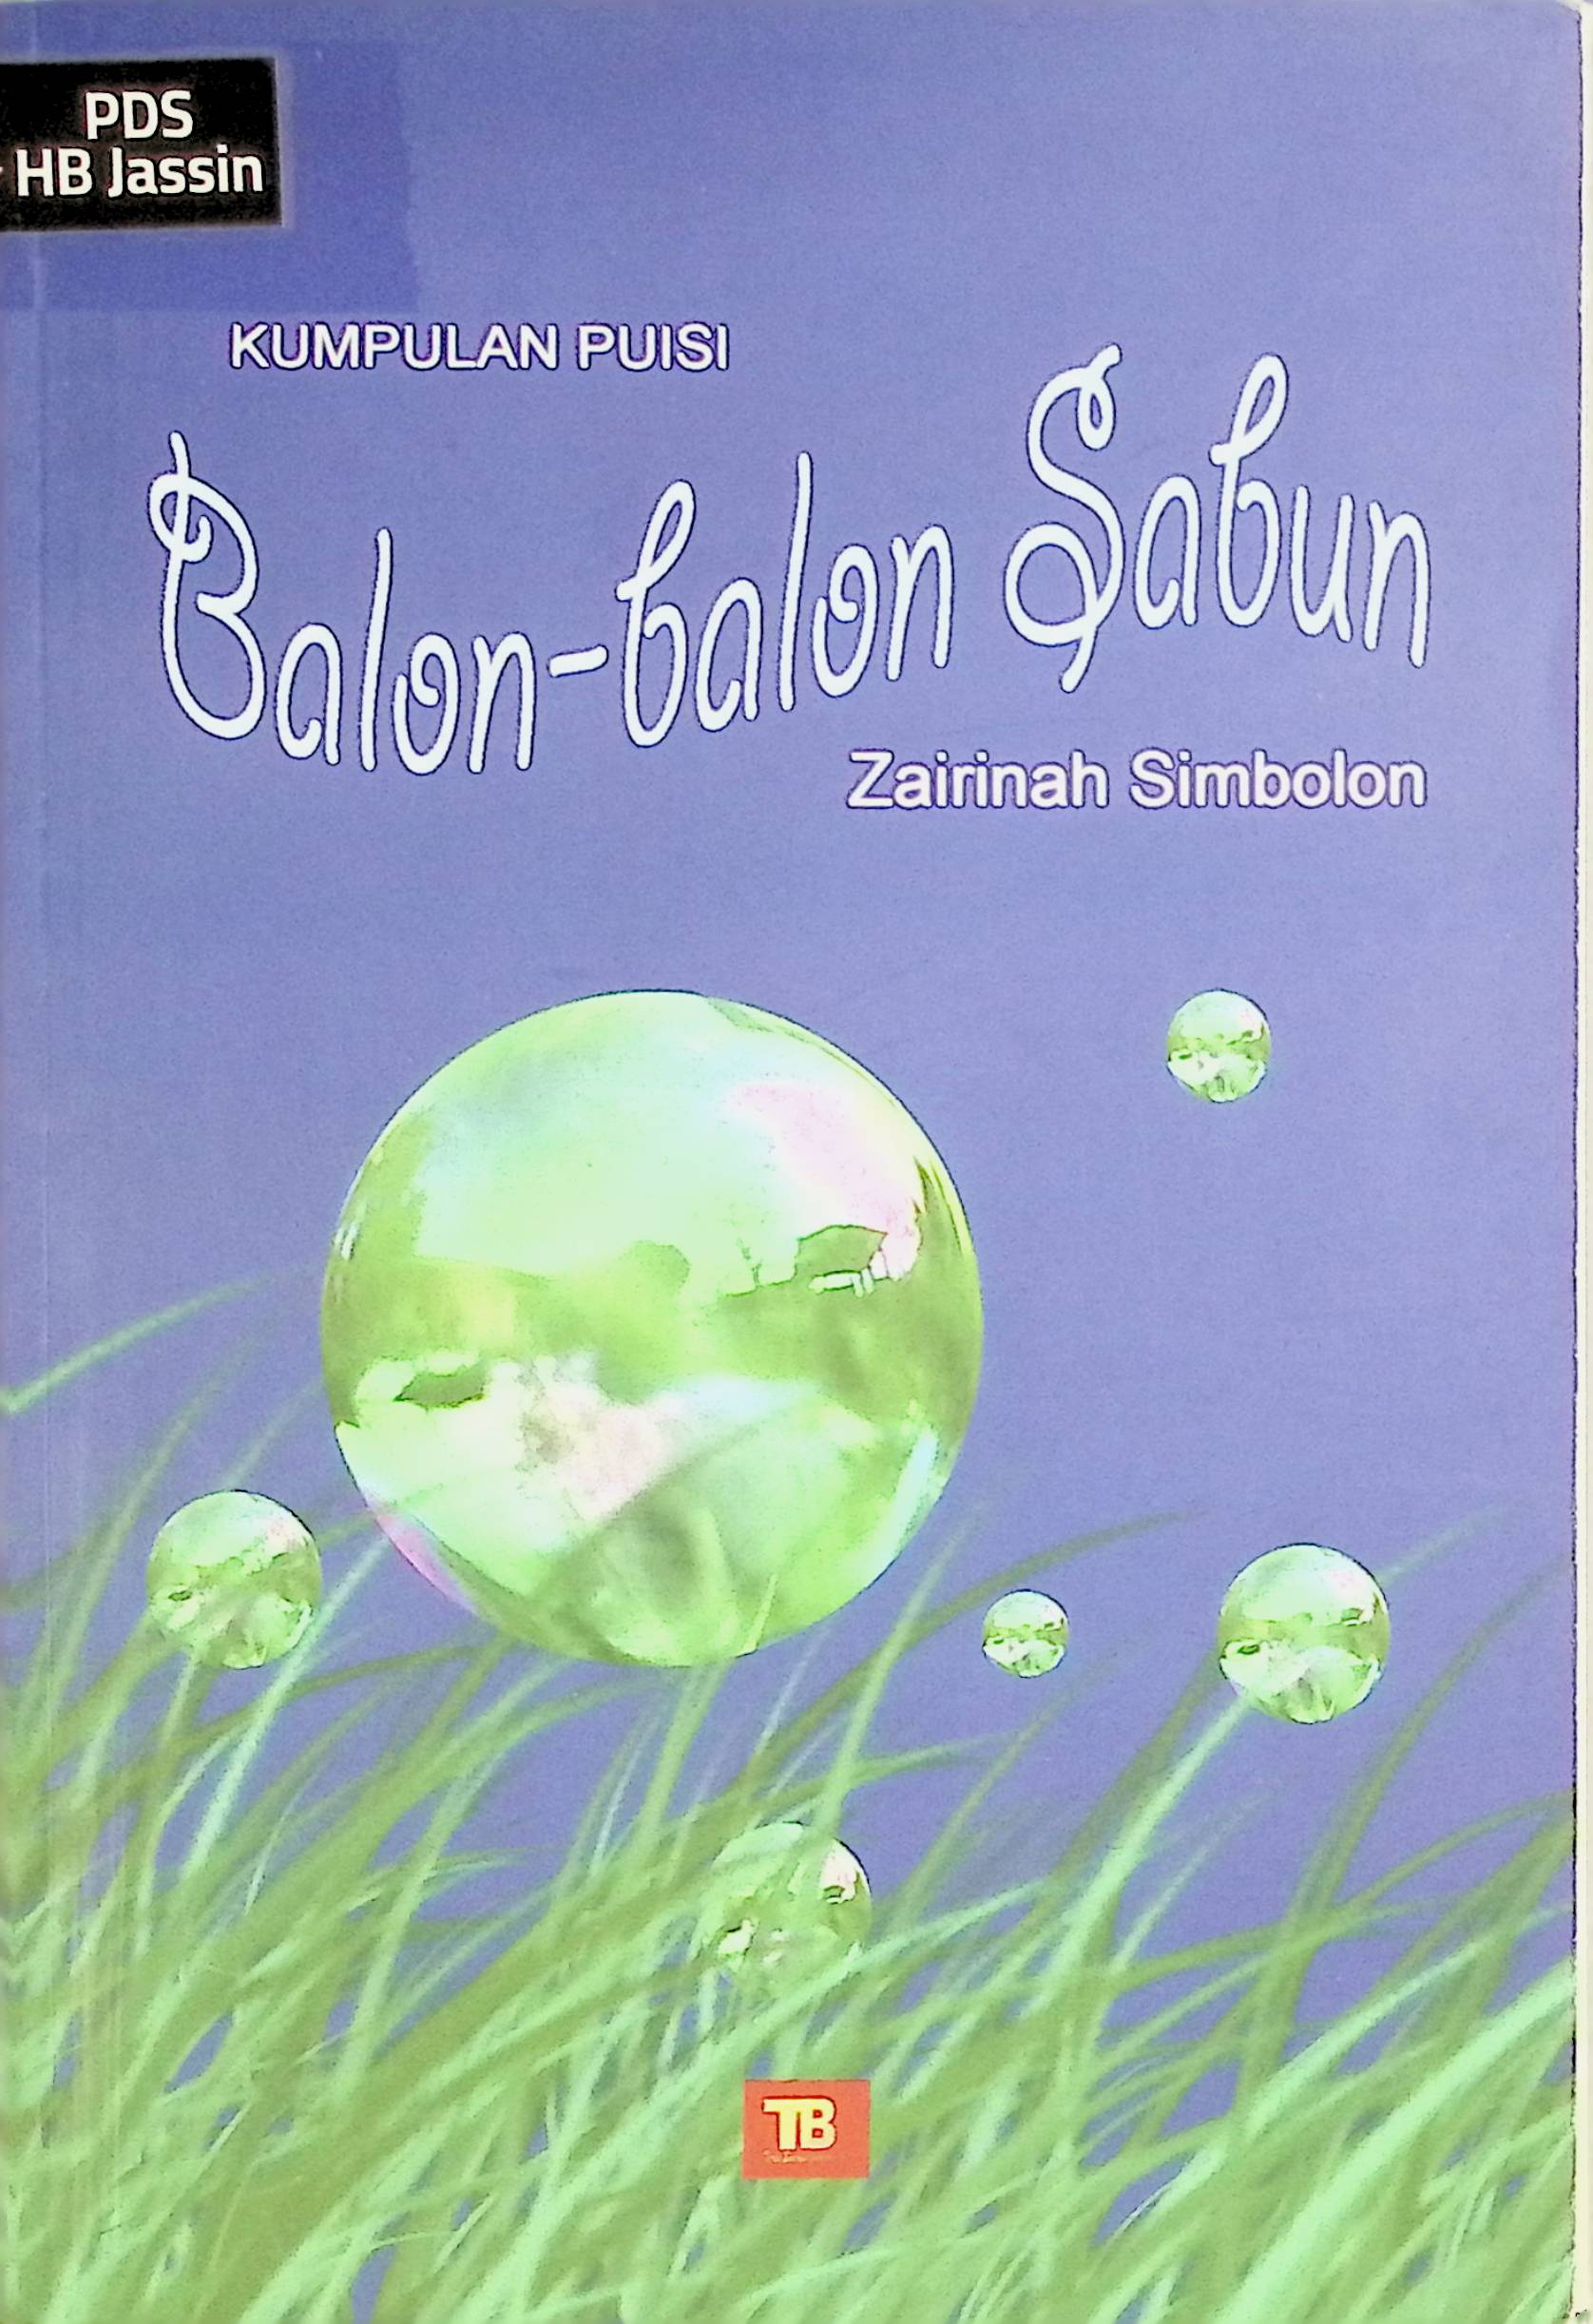 Balon-balon sabun